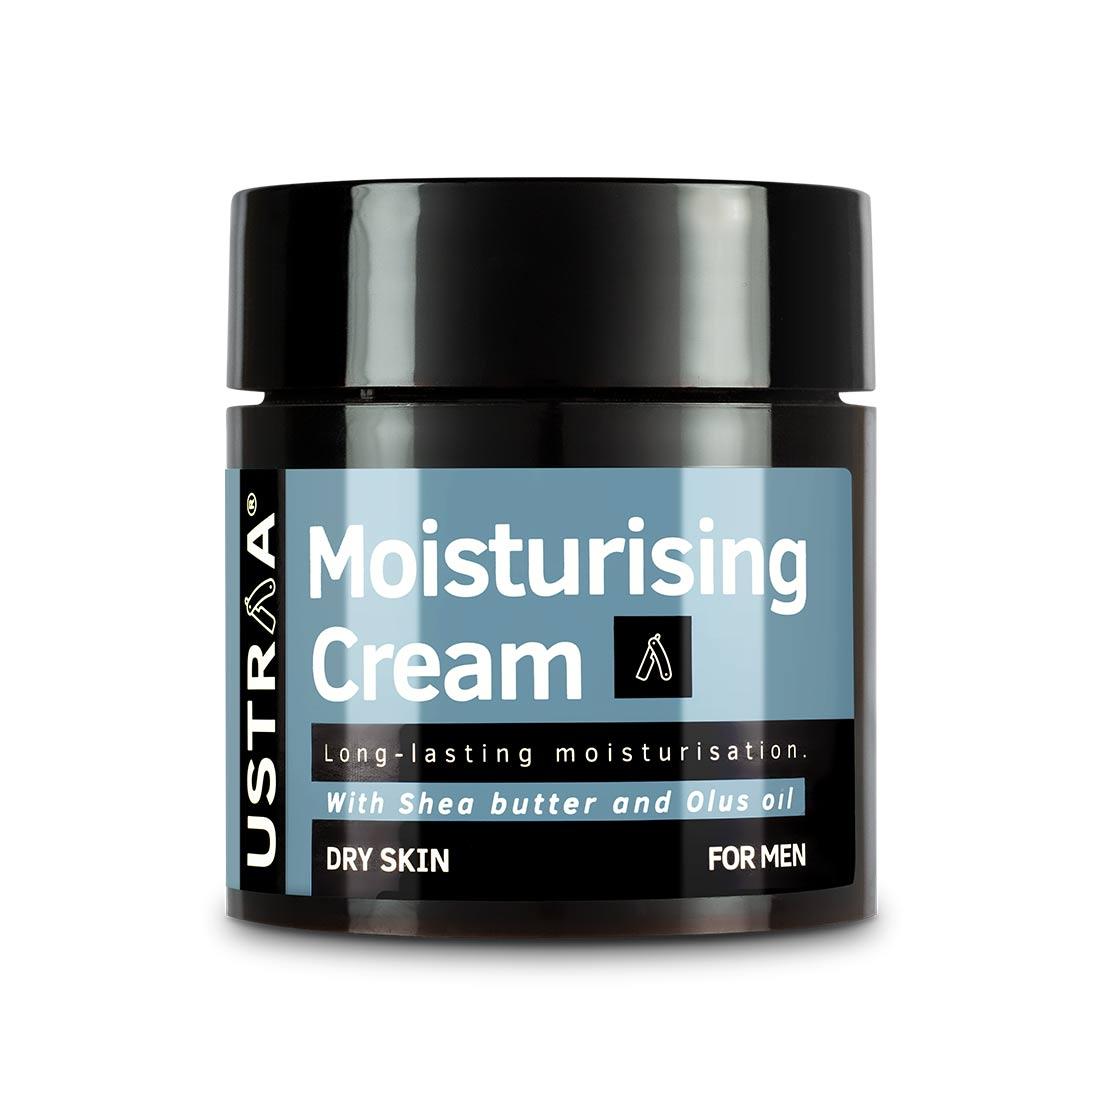 Moisturising Cream - Dry Skin